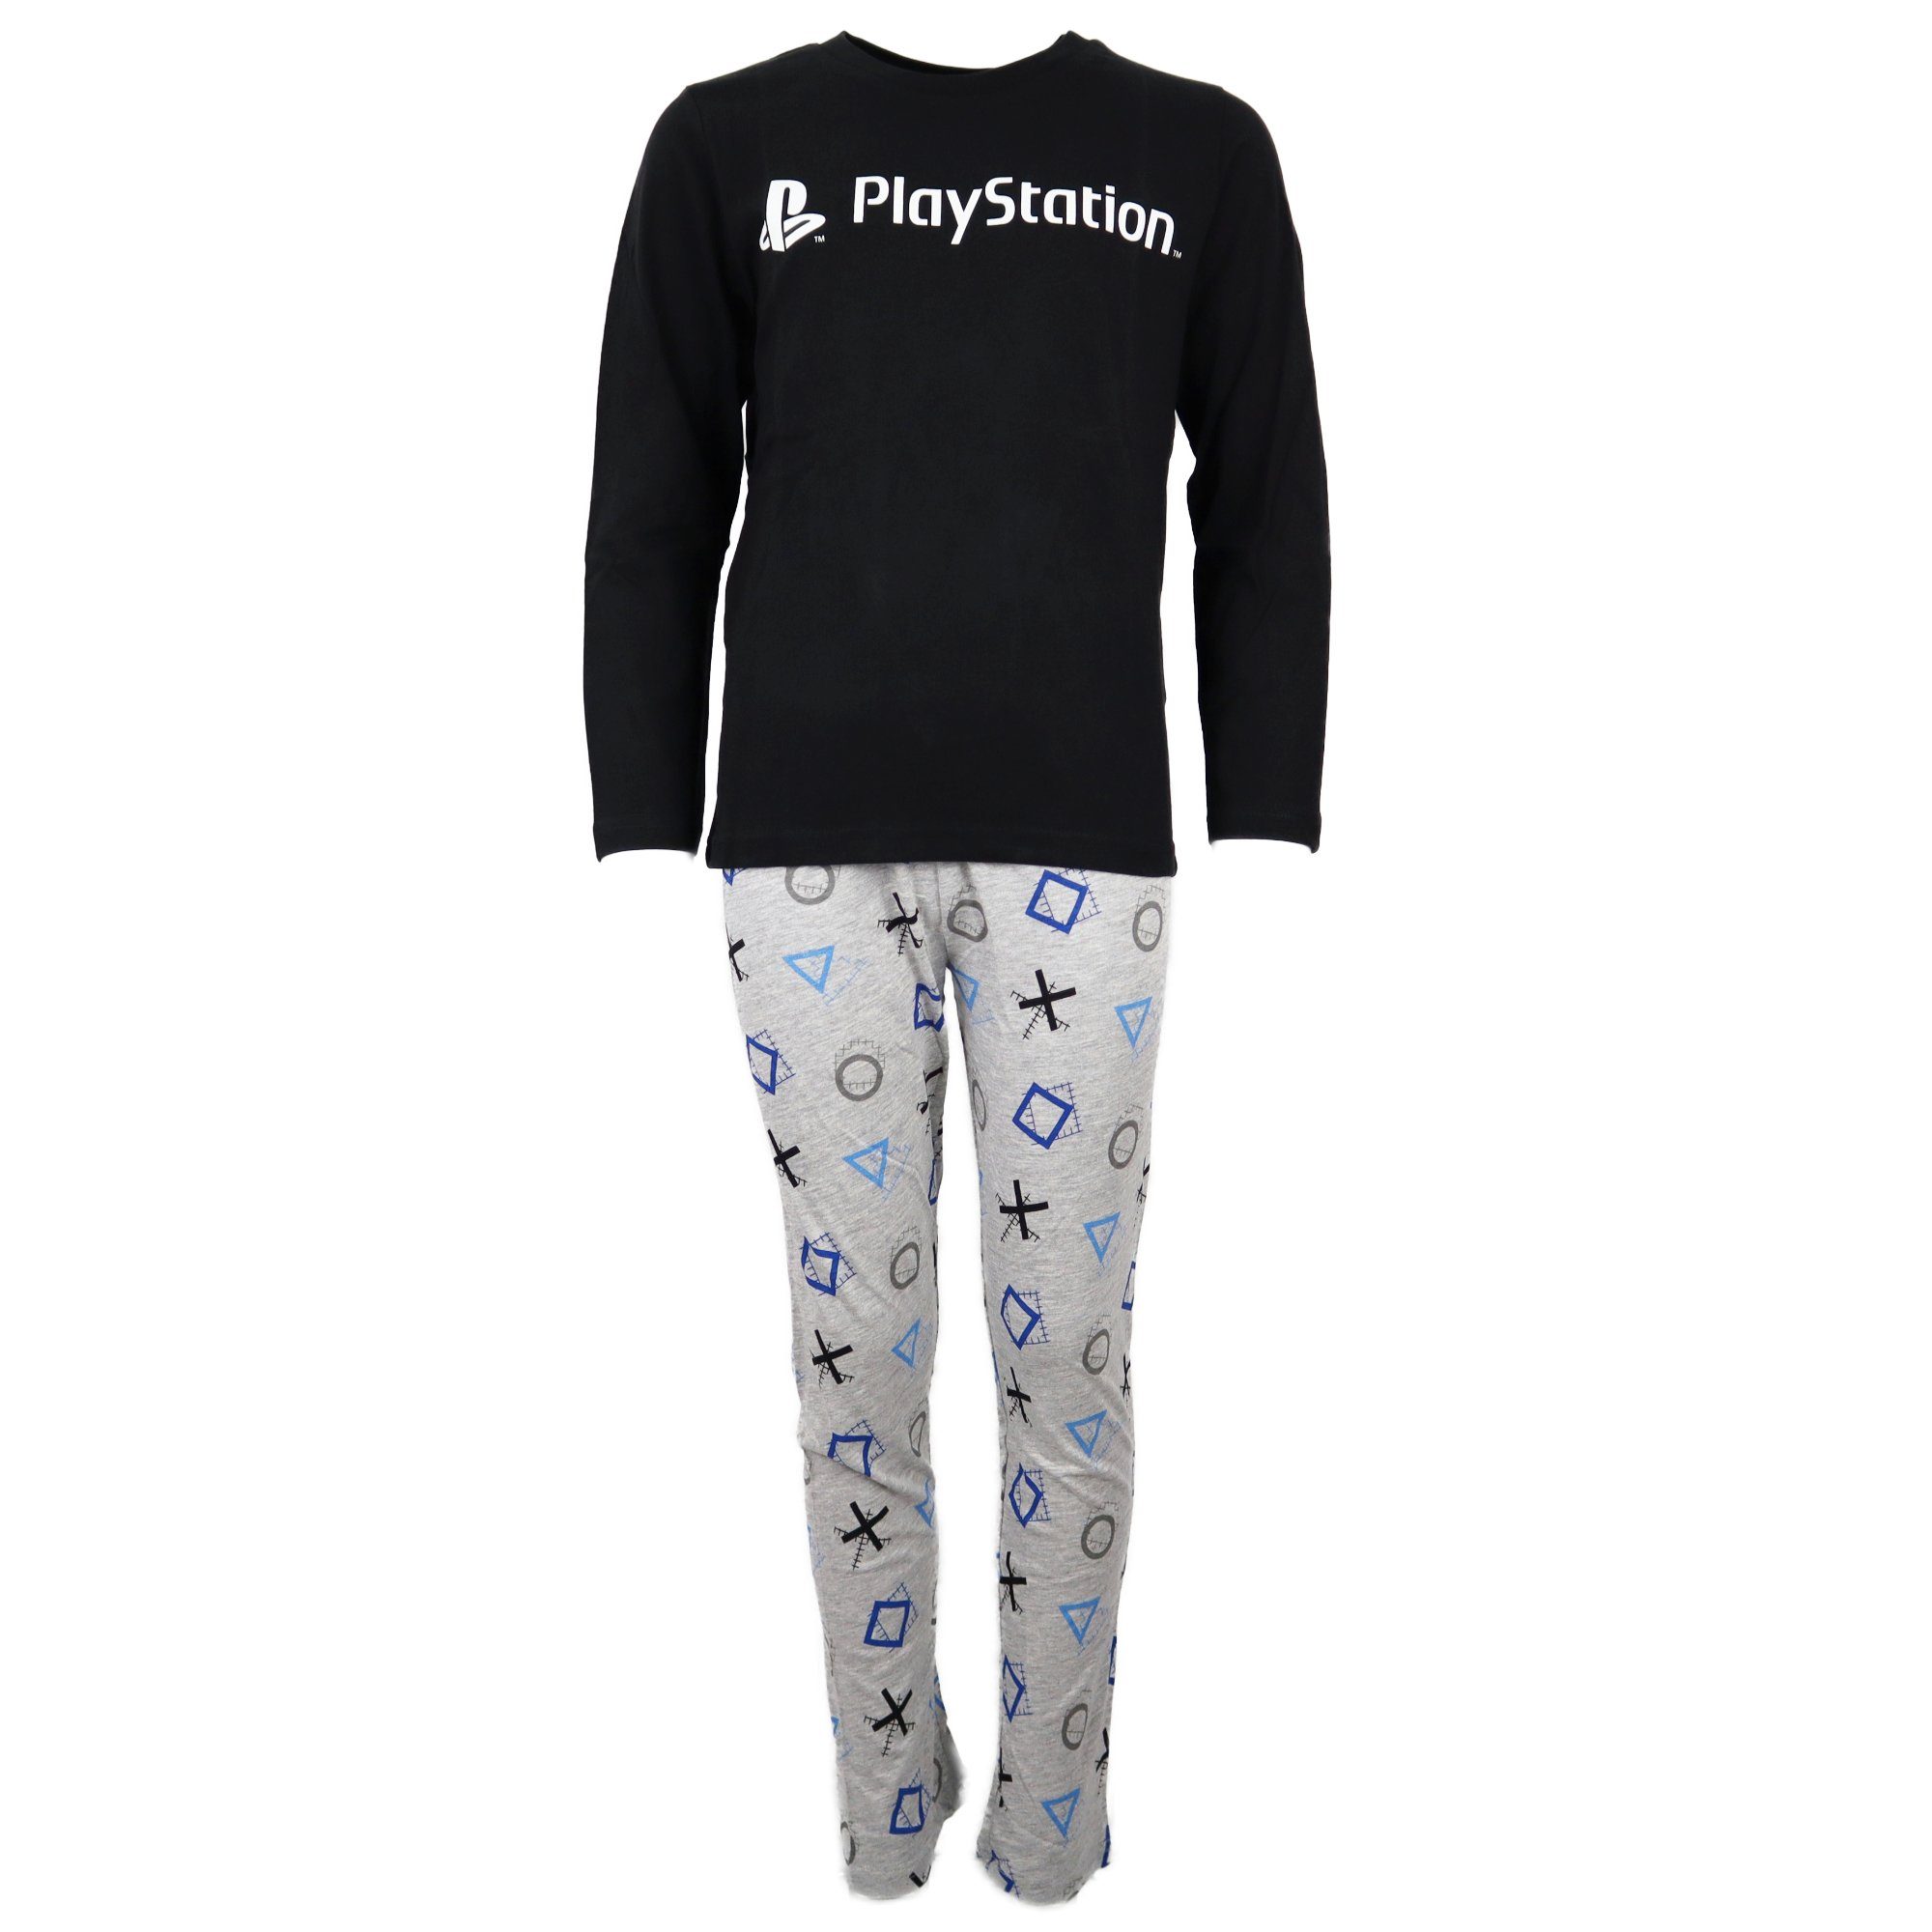 Wäsche/Bademode Nachtwäsche Playstation Pyjama Kinder Schlafanzug Gr. 116 bis 152, Baumwolle